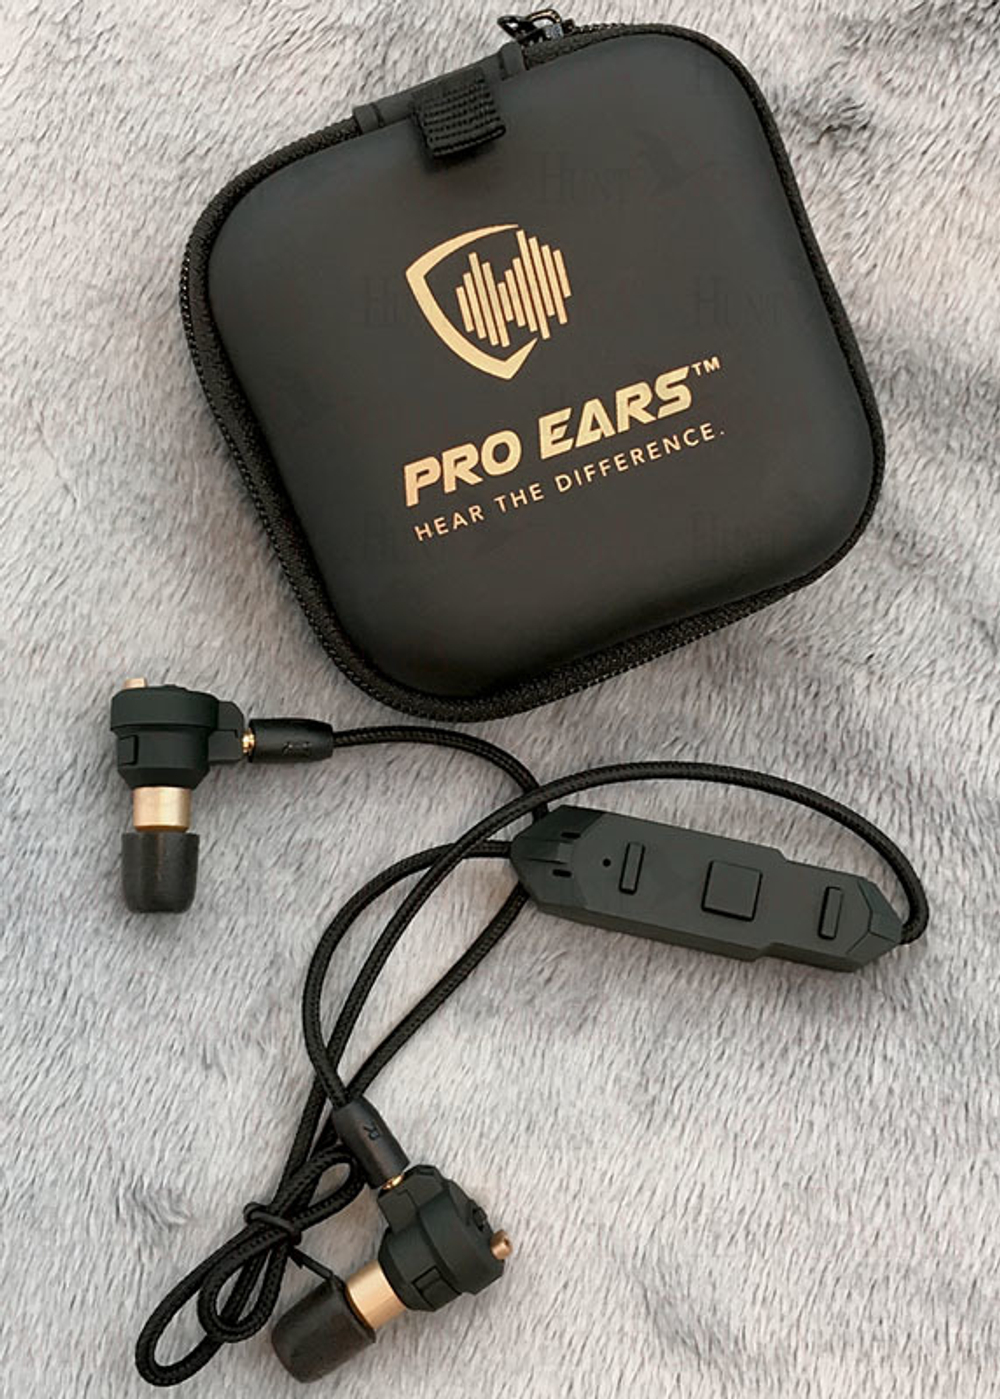 Pro Ears Stealth